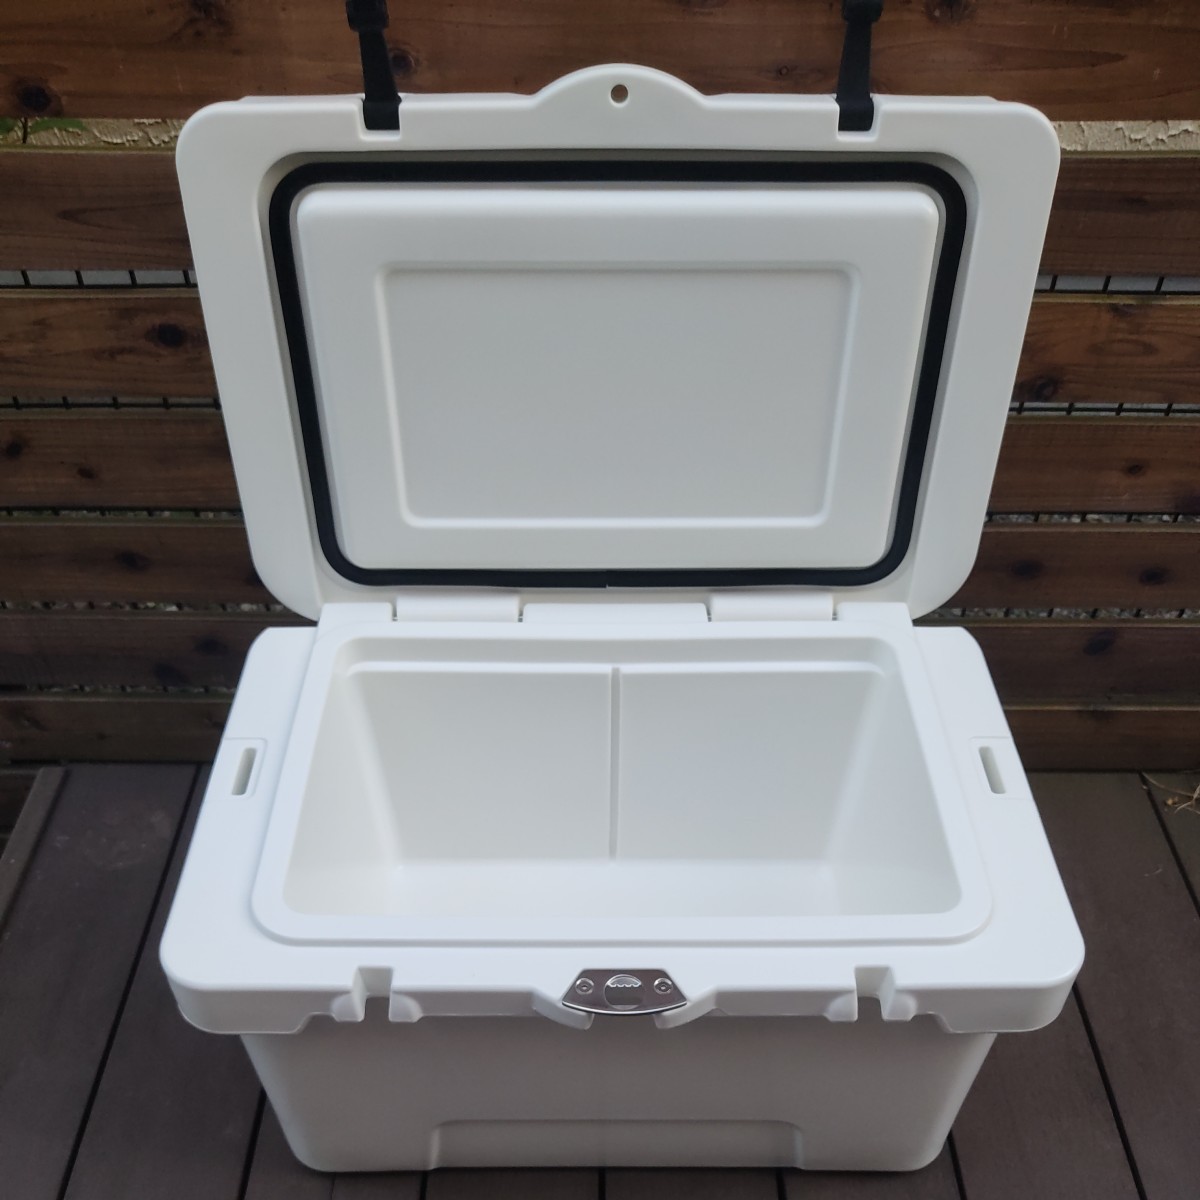  бесплатная доставка Highlander кемпинг для твердый cooler-box 35 литров белый термос ieti.